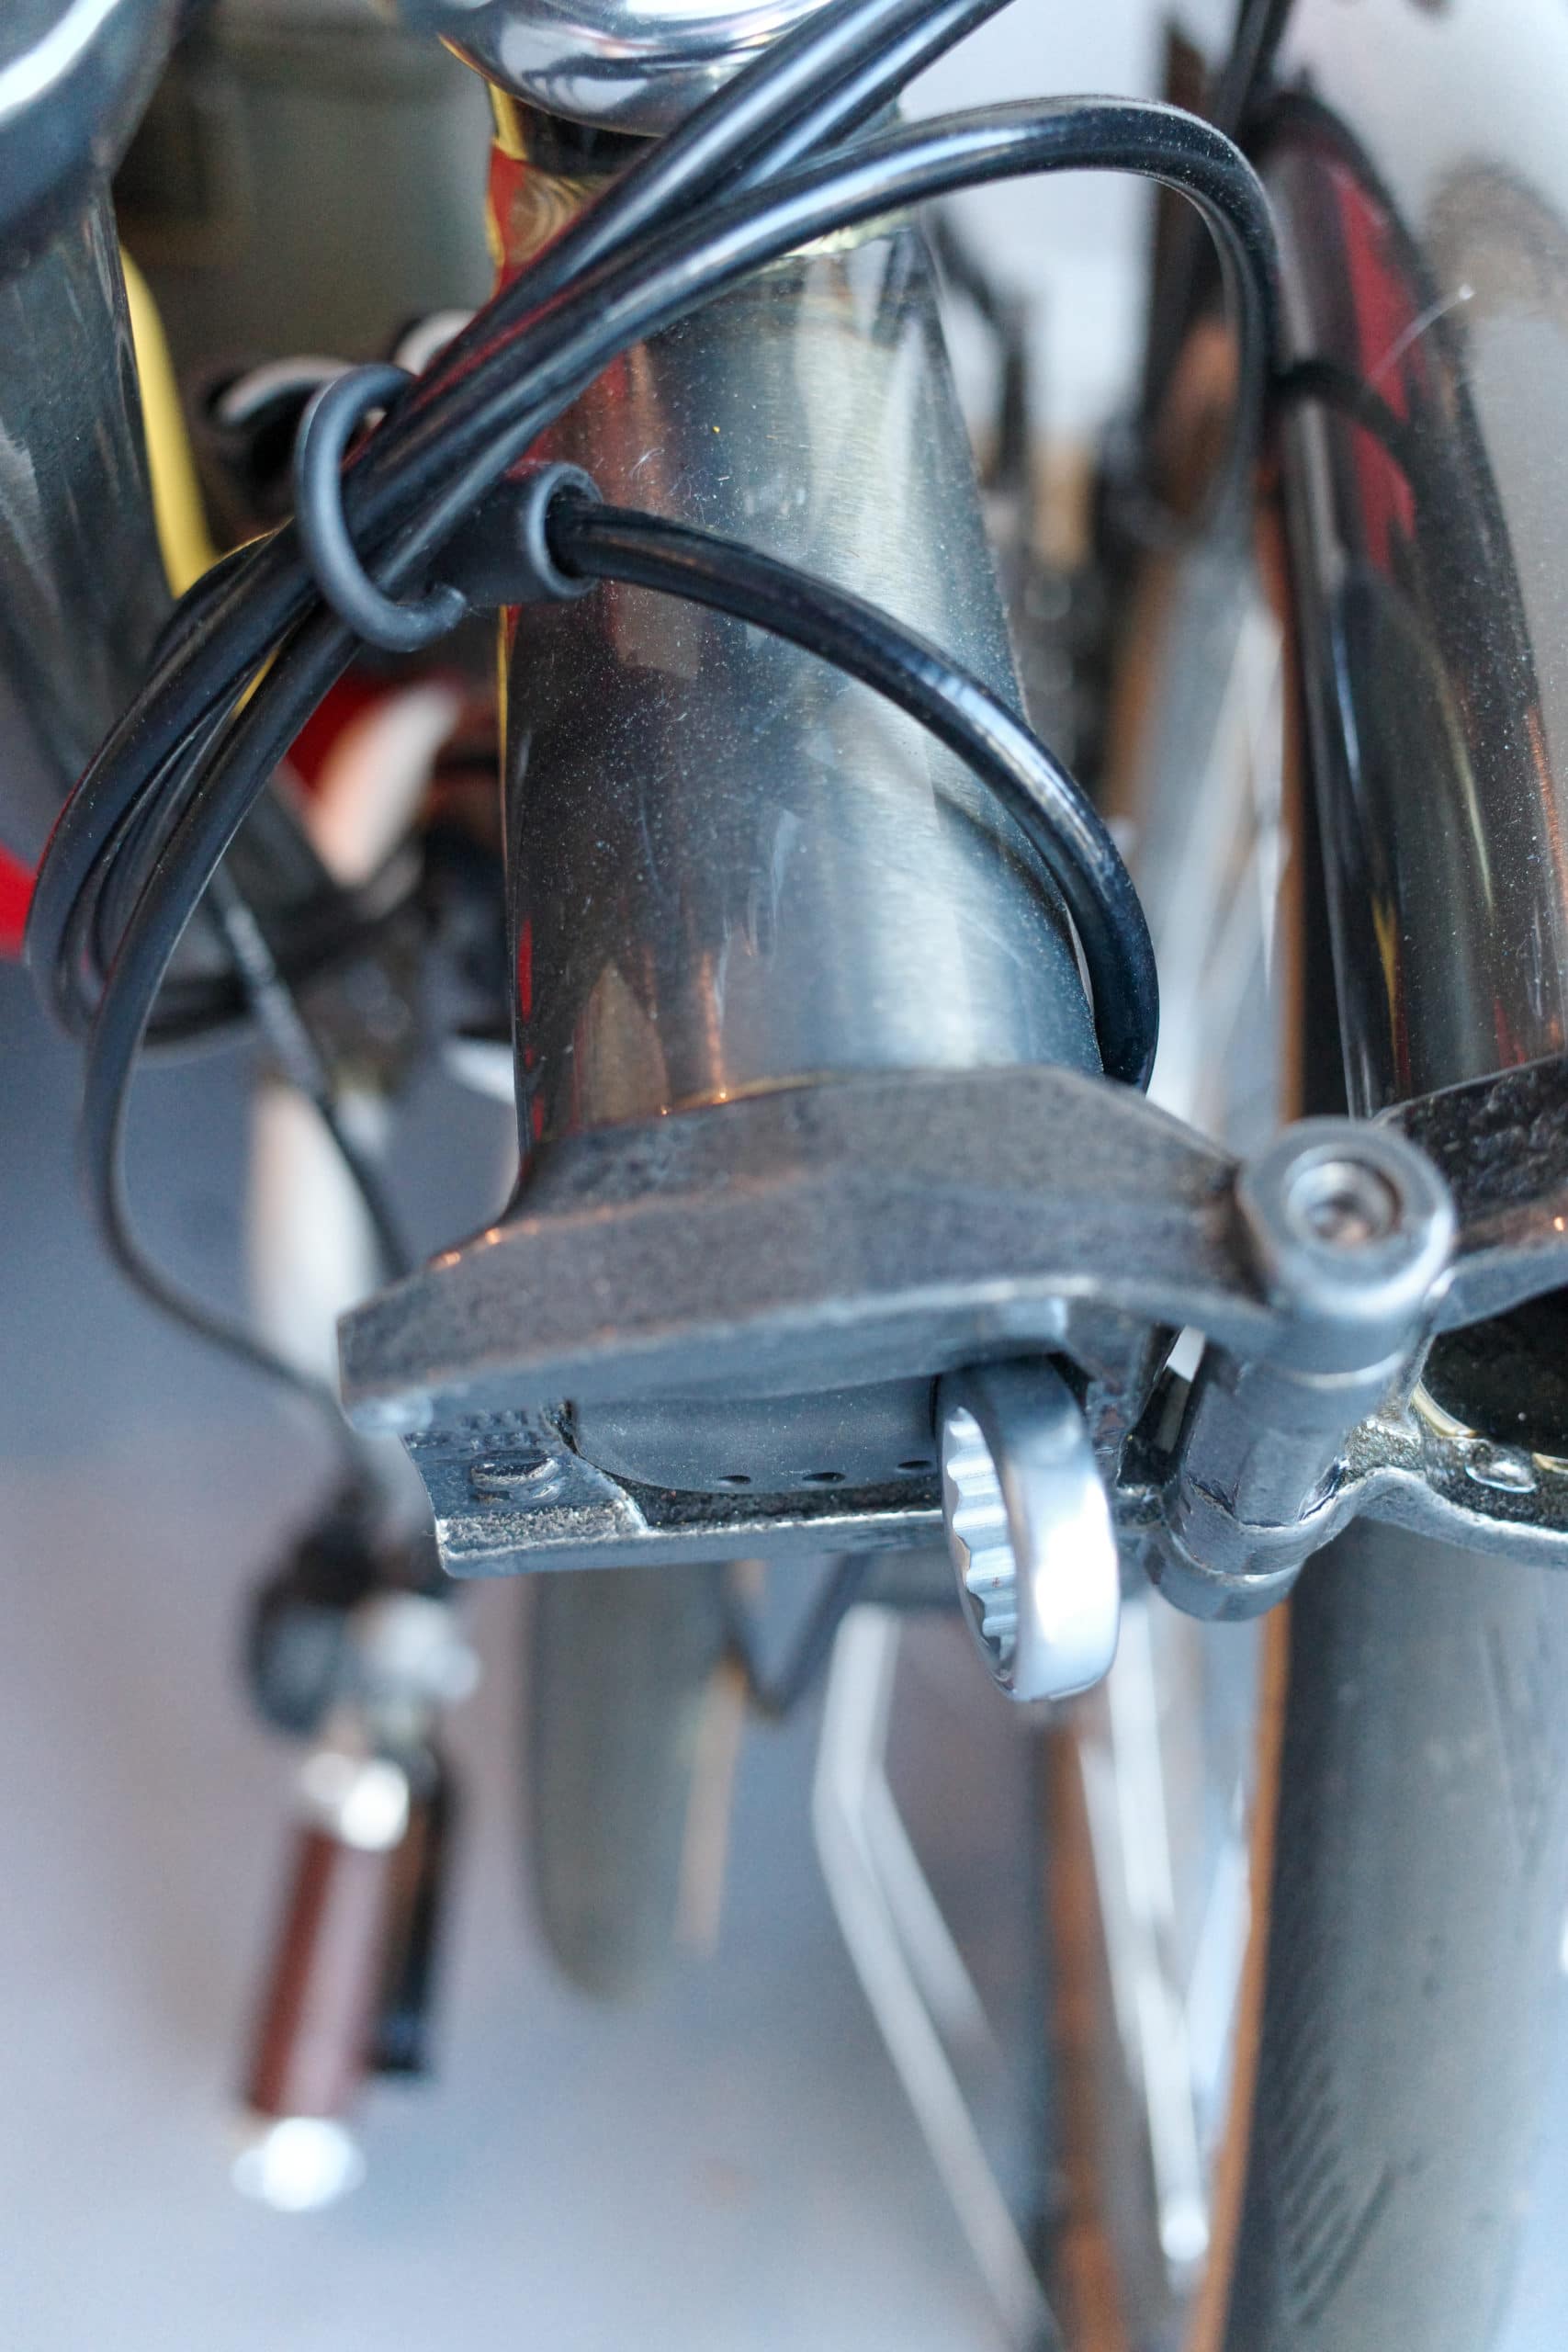 Brompton tool in bike